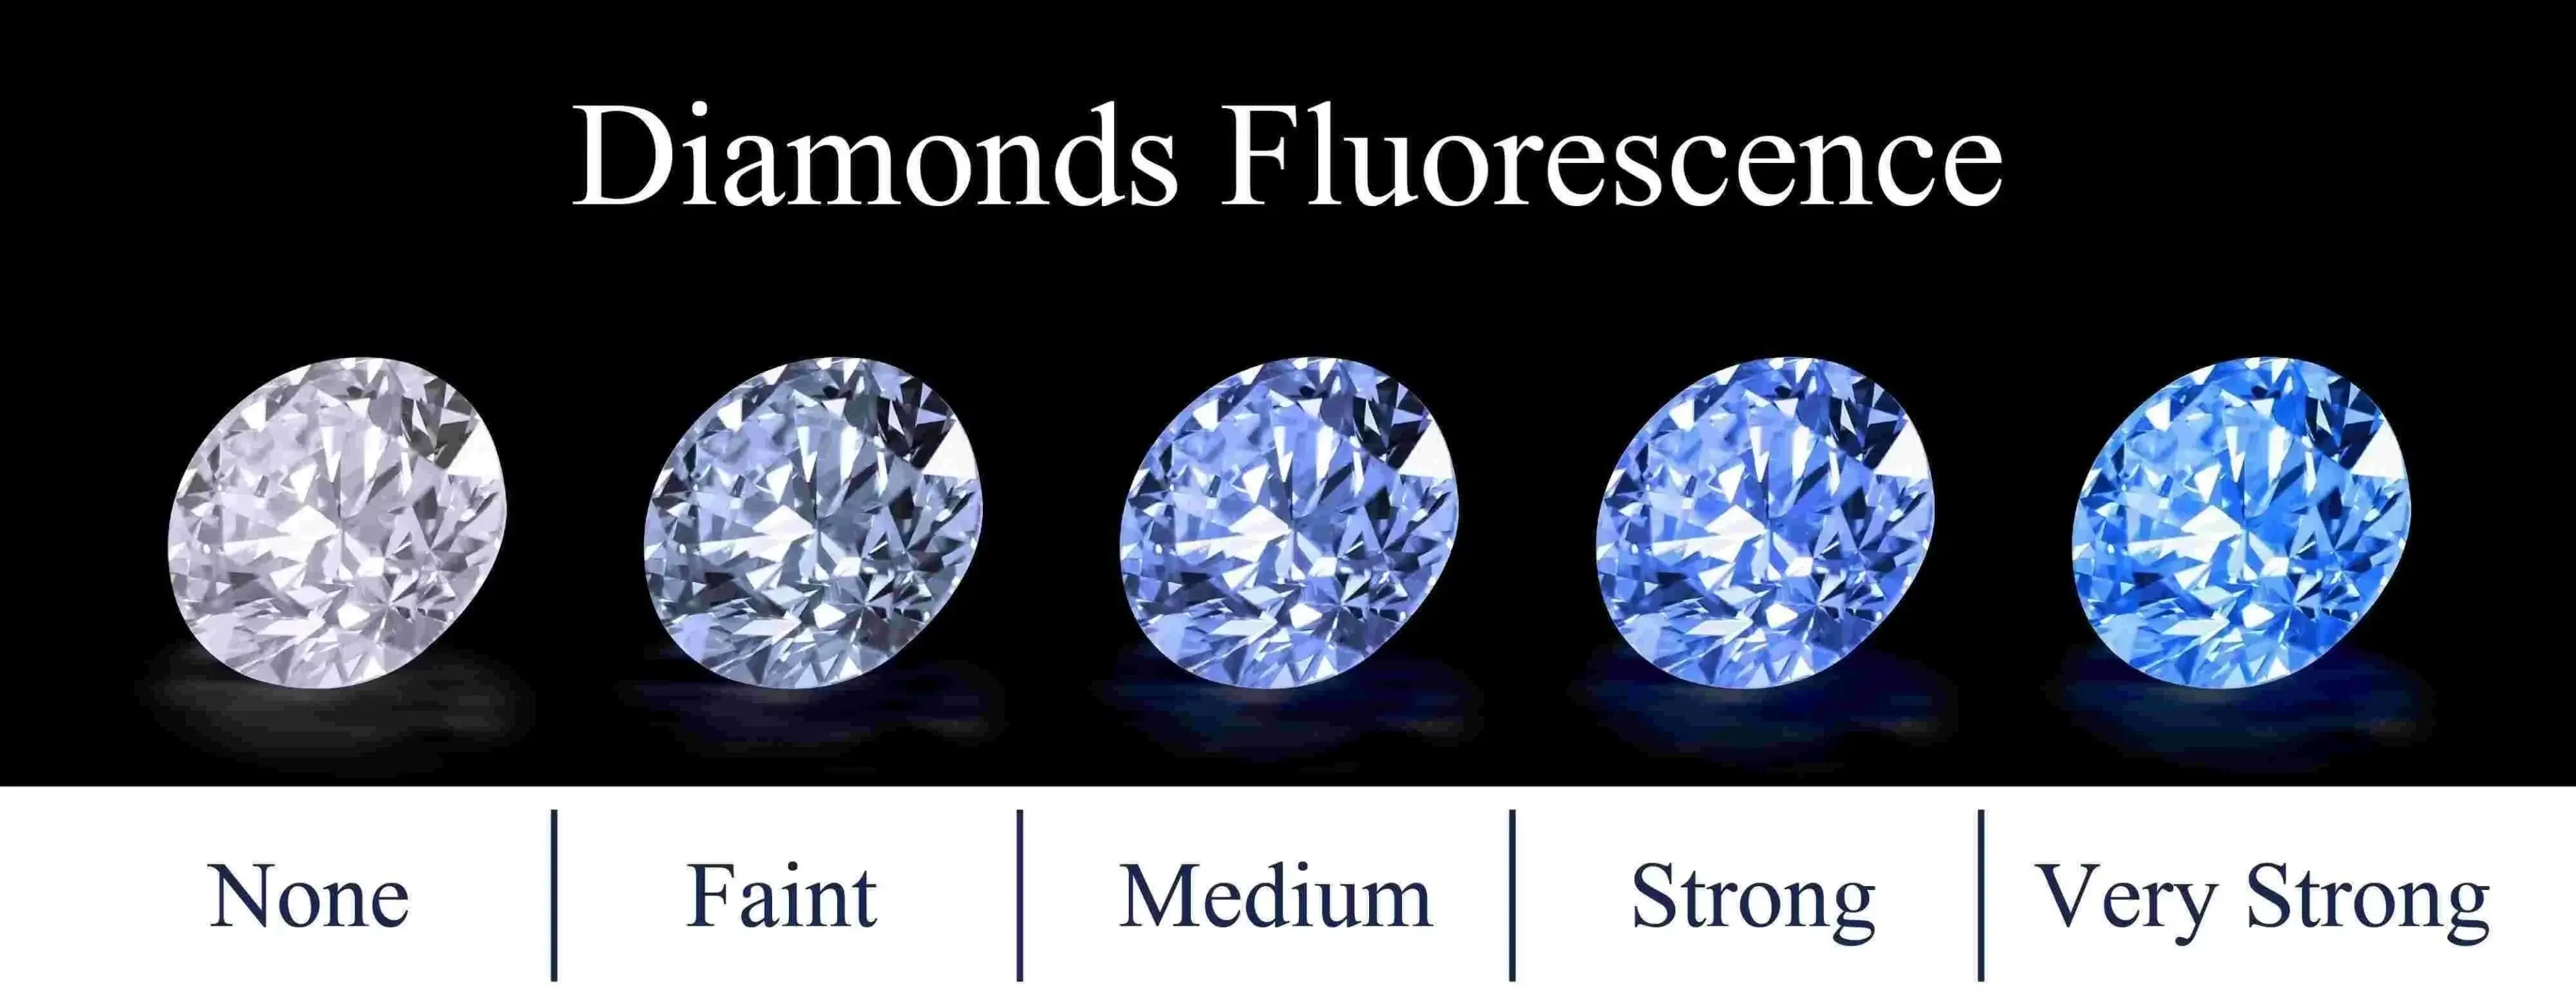 Diamond fluorescence scale